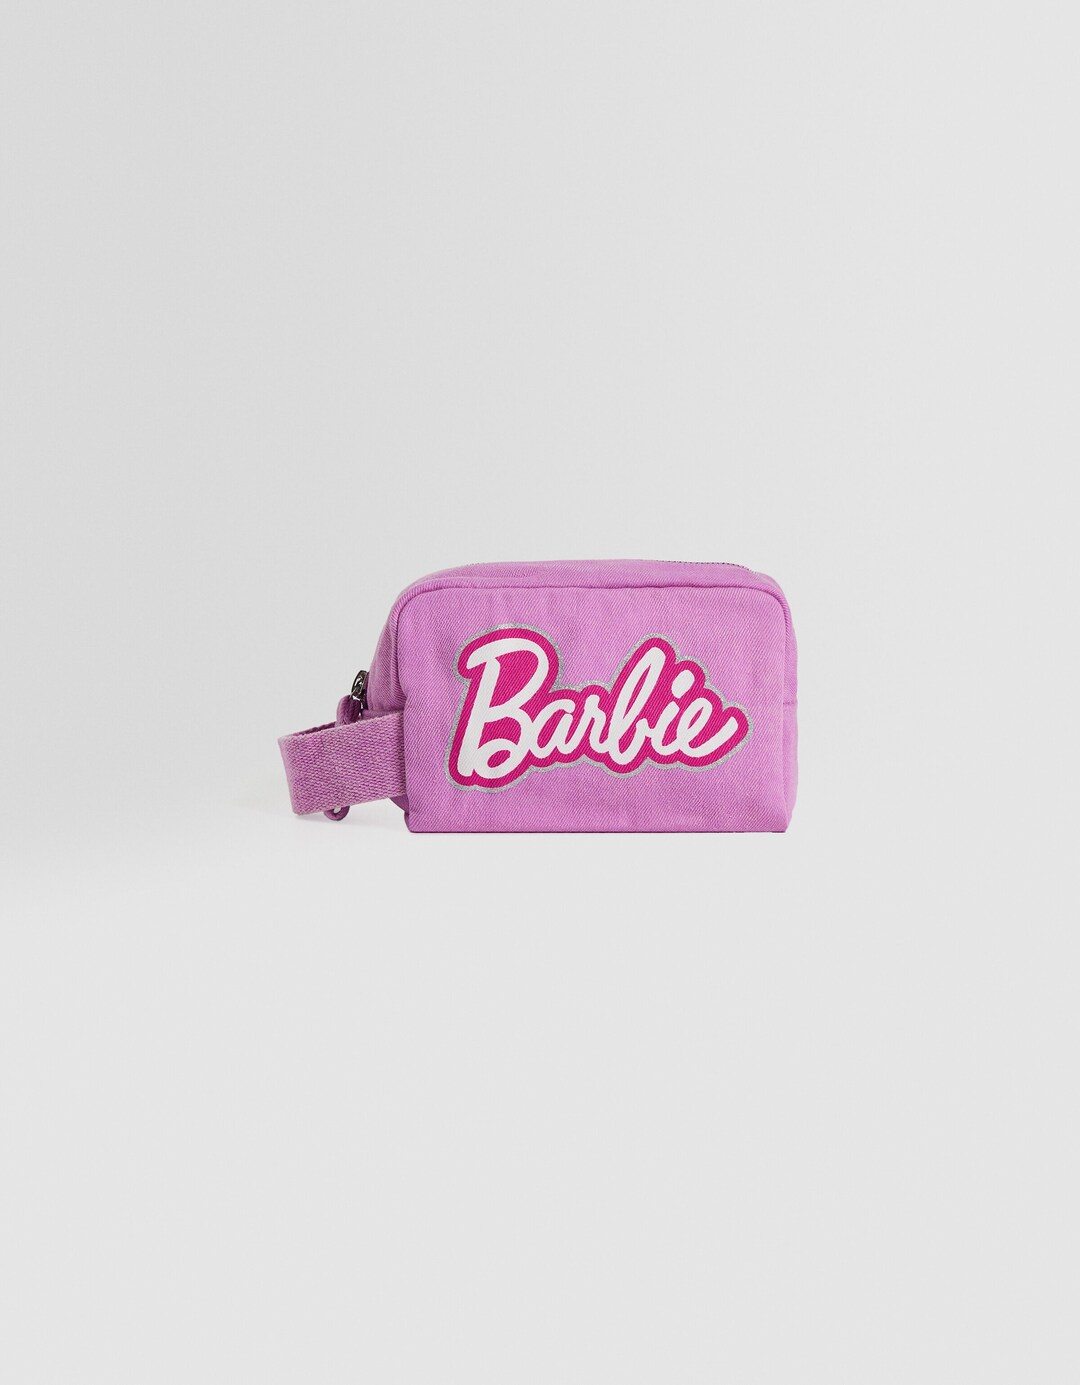 Barbie kozmetik çantası